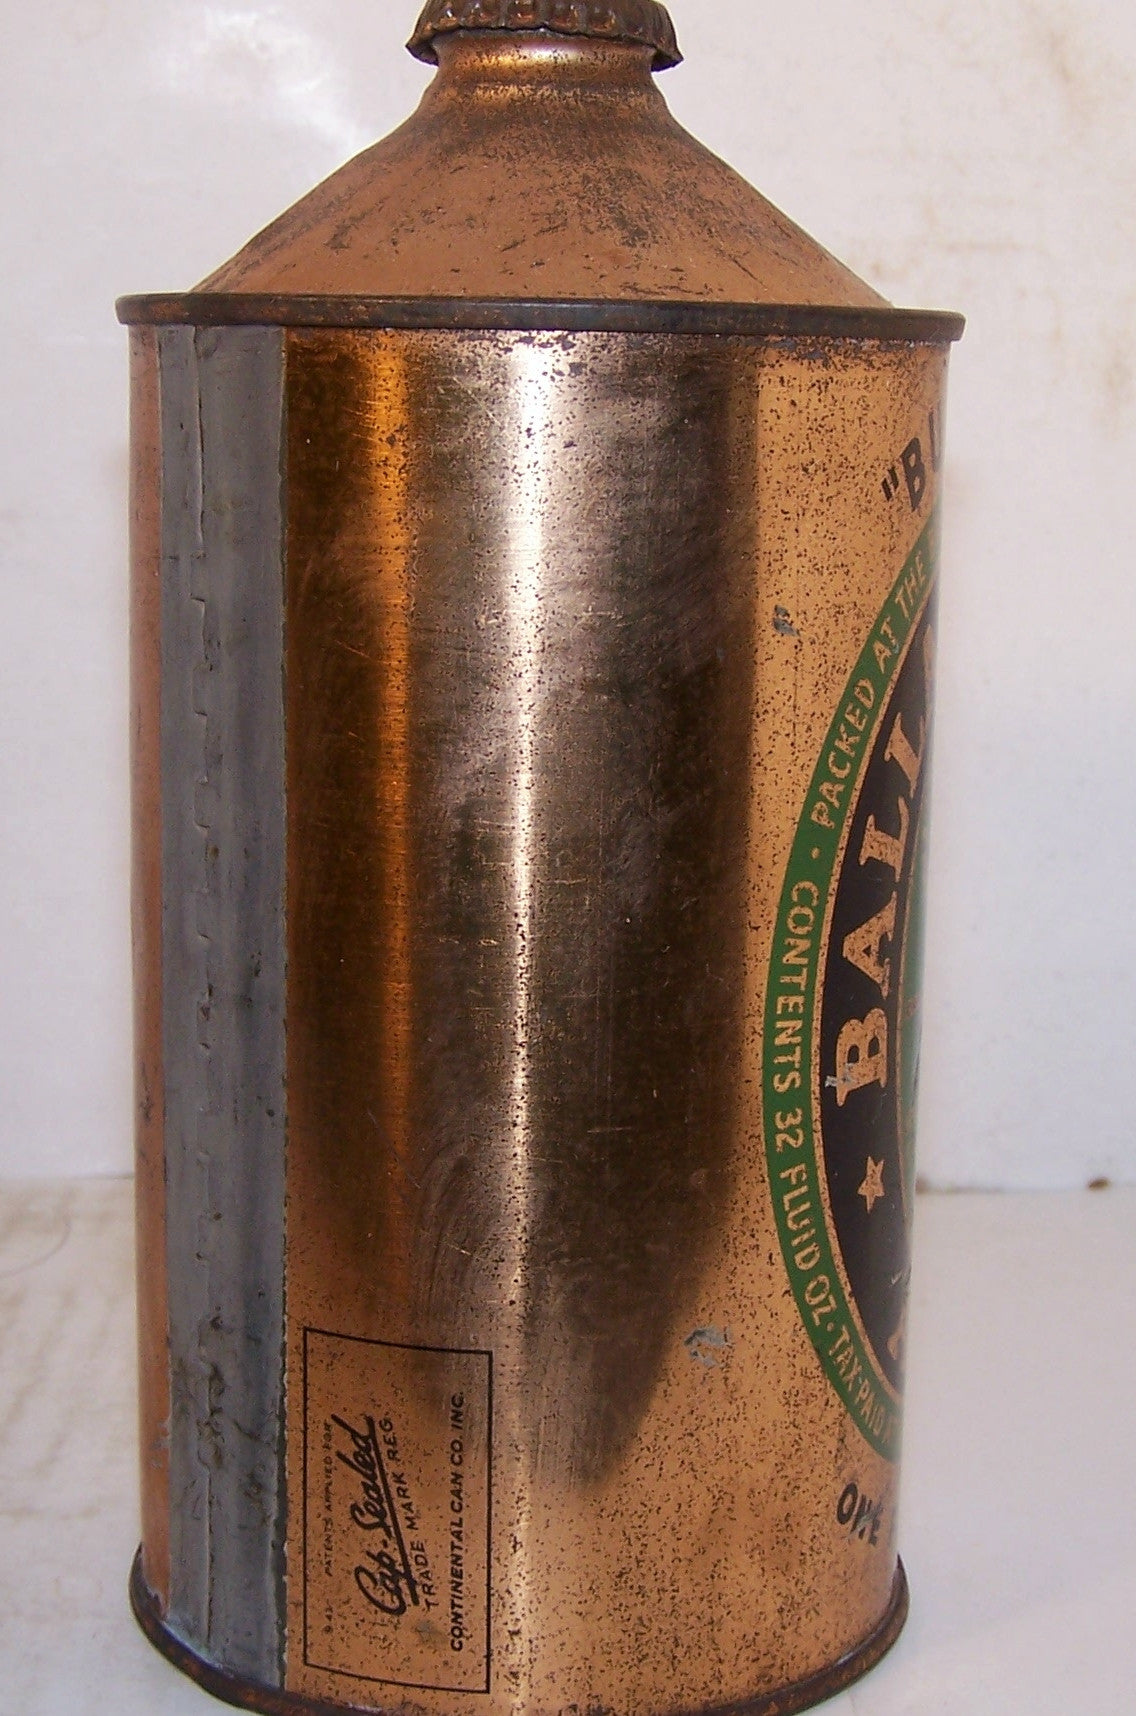 Ballantine Ale "Bumper" USBC 202-7, with crown, Grade 1-